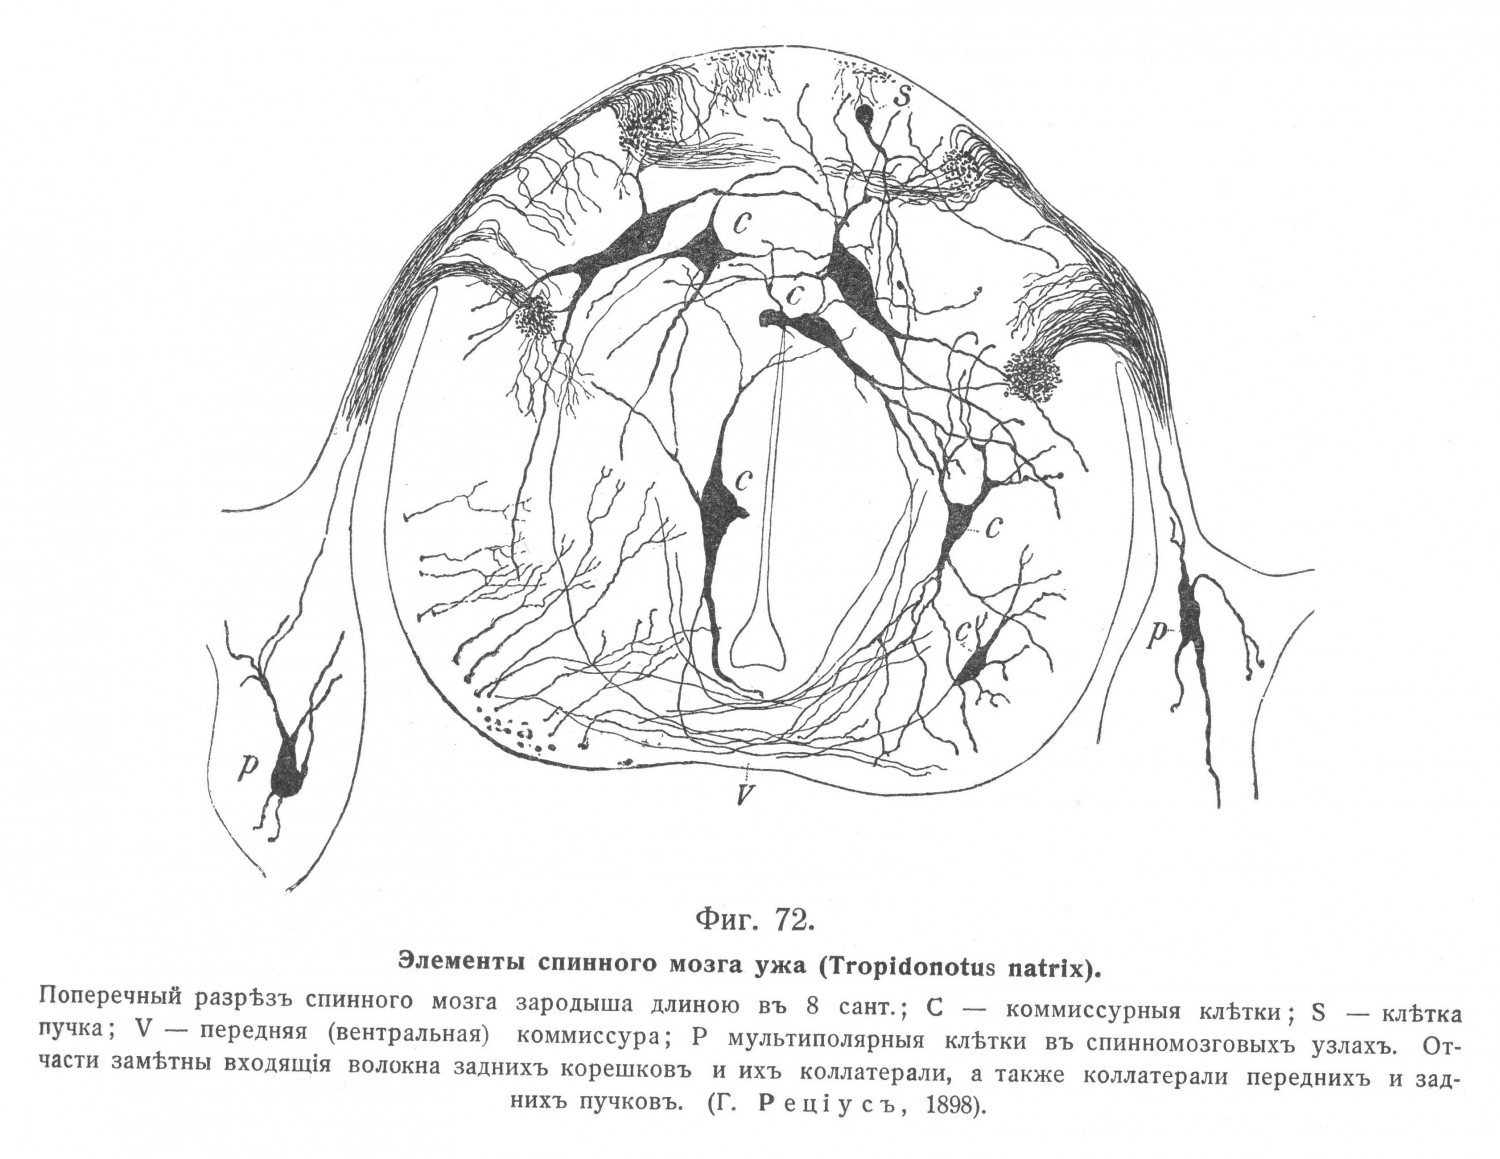 Элементы спинного мозга ужа (Tropidonotus natrix).